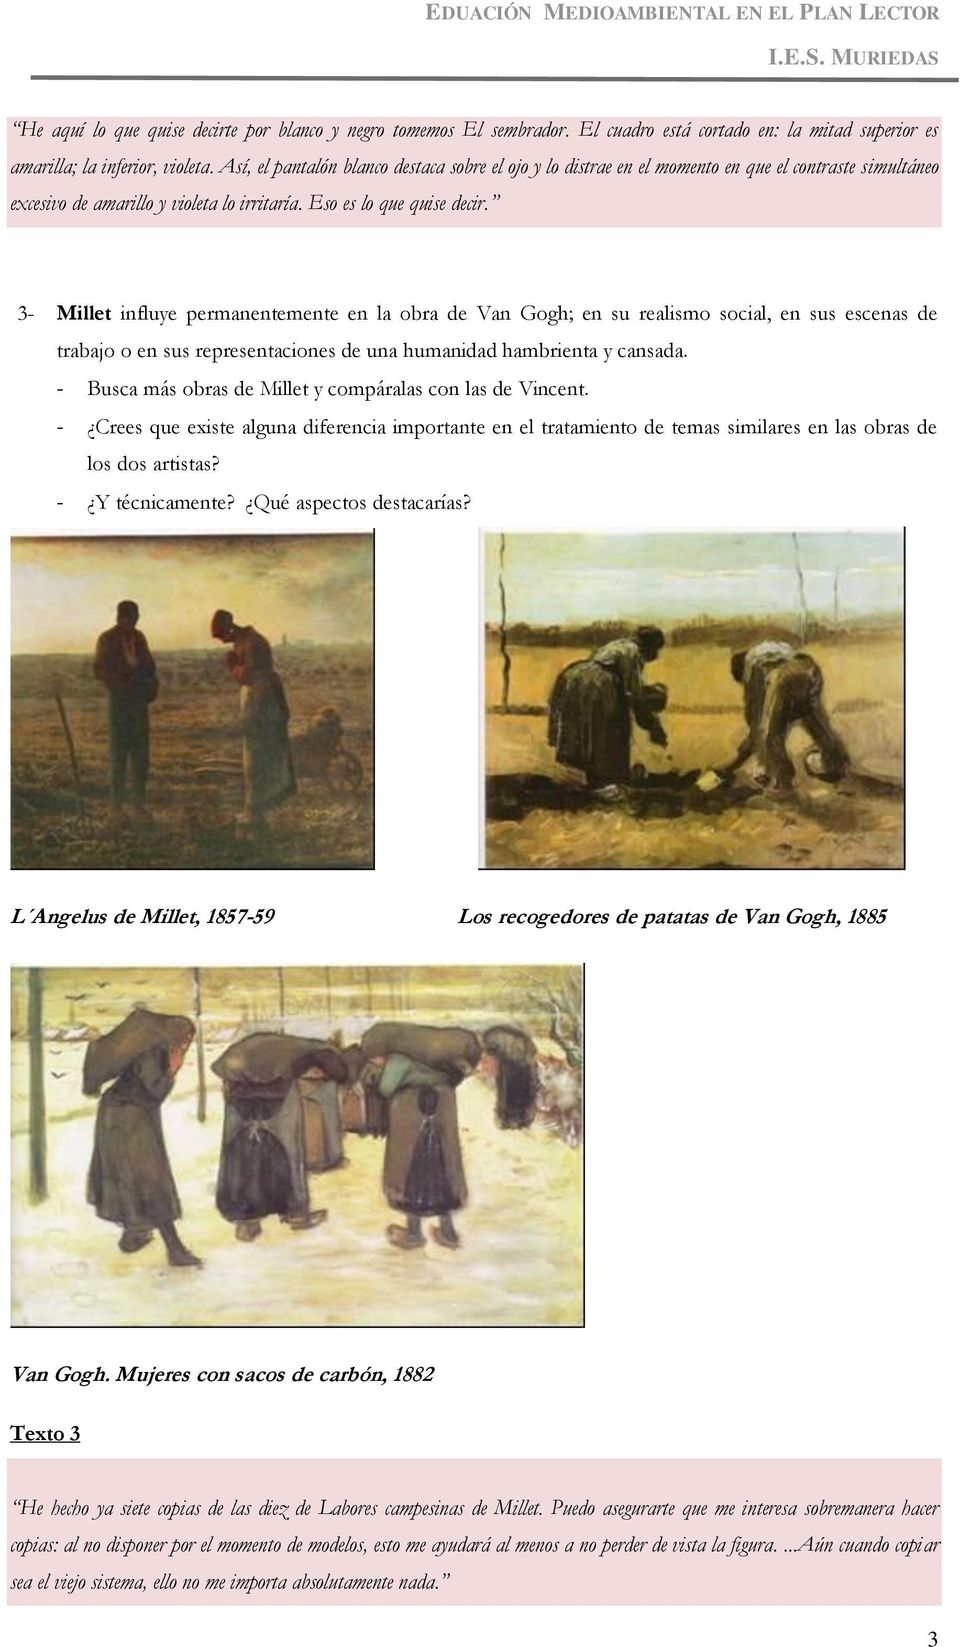 3- Millet influye permanentemente en la obra de Van Gogh; en su realismo social, en sus escenas de trabajo o en sus representaciones de una humanidad hambrienta y cansada.